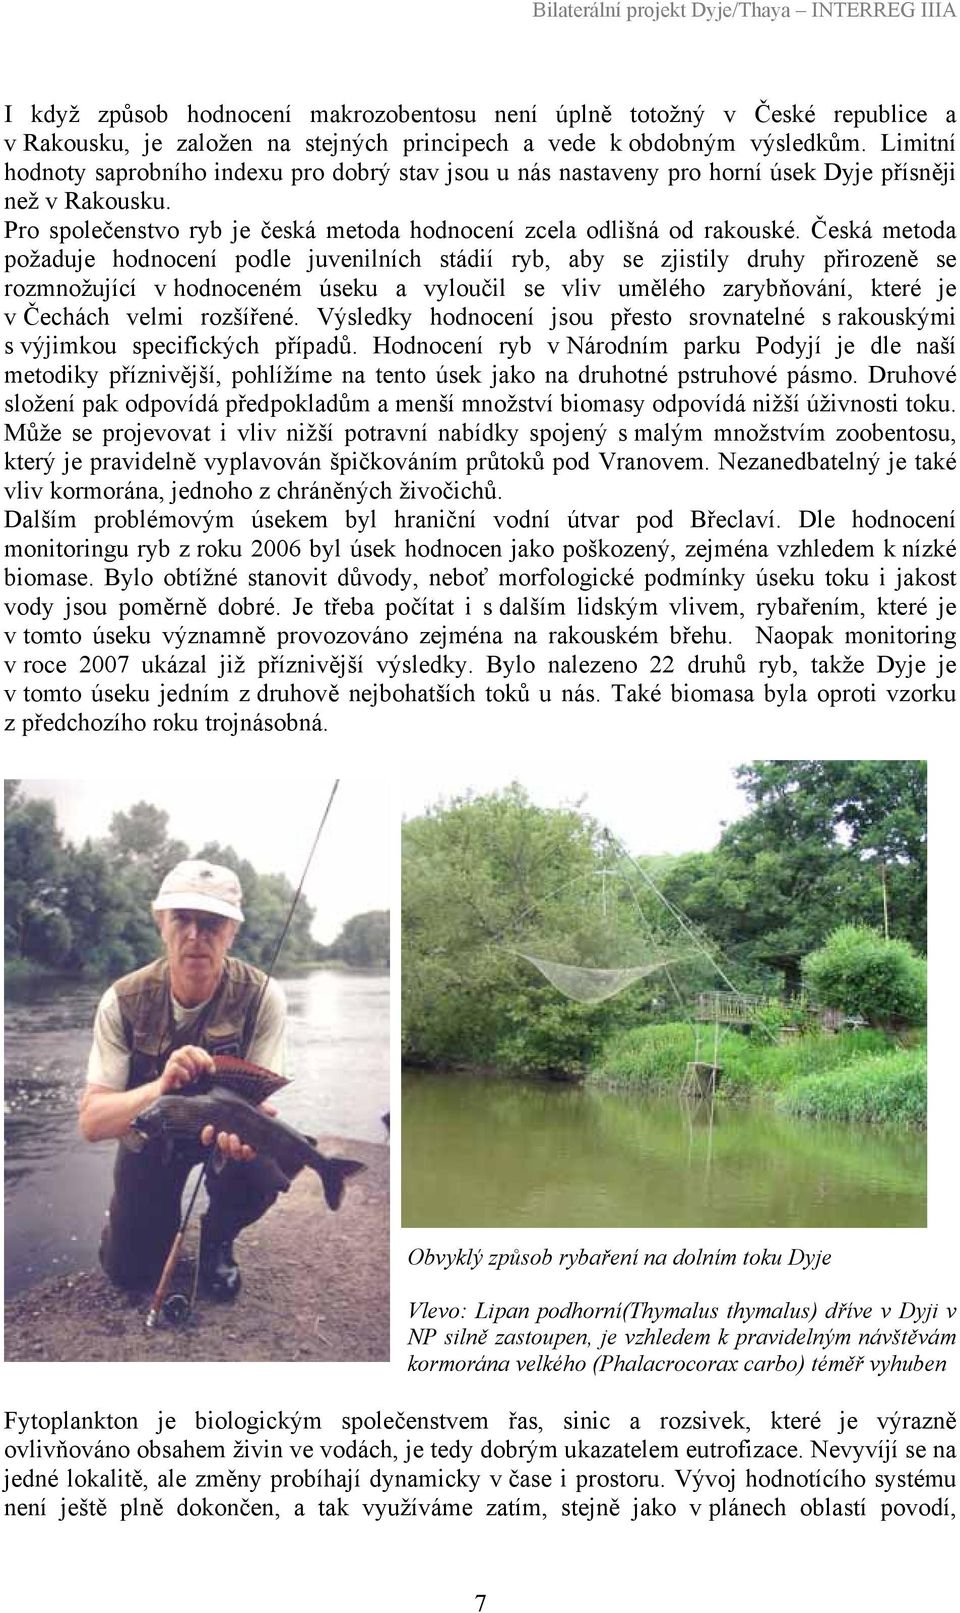 Česká metoda požaduje hodnocení podle juvenilních stádií ryb, aby se zjistily druhy přirozeně se rozmnožující v hodnoceném úseku a vyloučil se vliv umělého zarybňování, které je v Čechách velmi